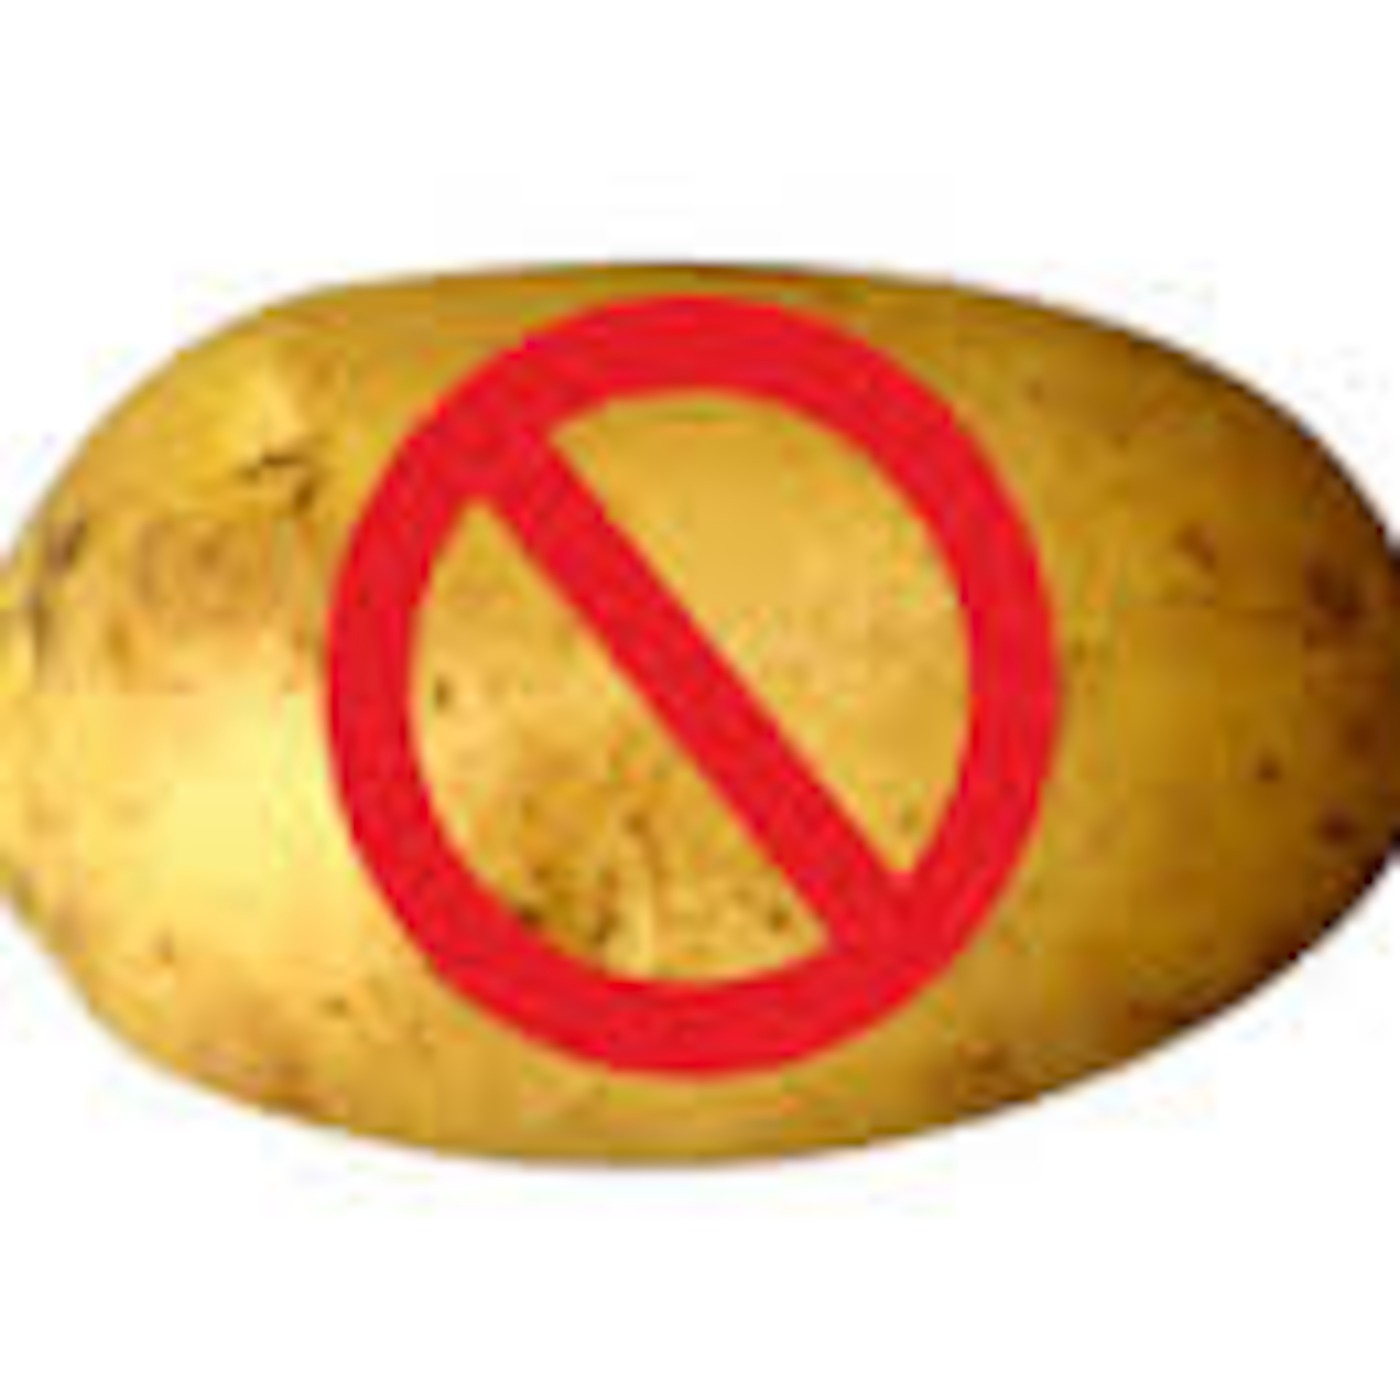 Not a Potato's Podcast